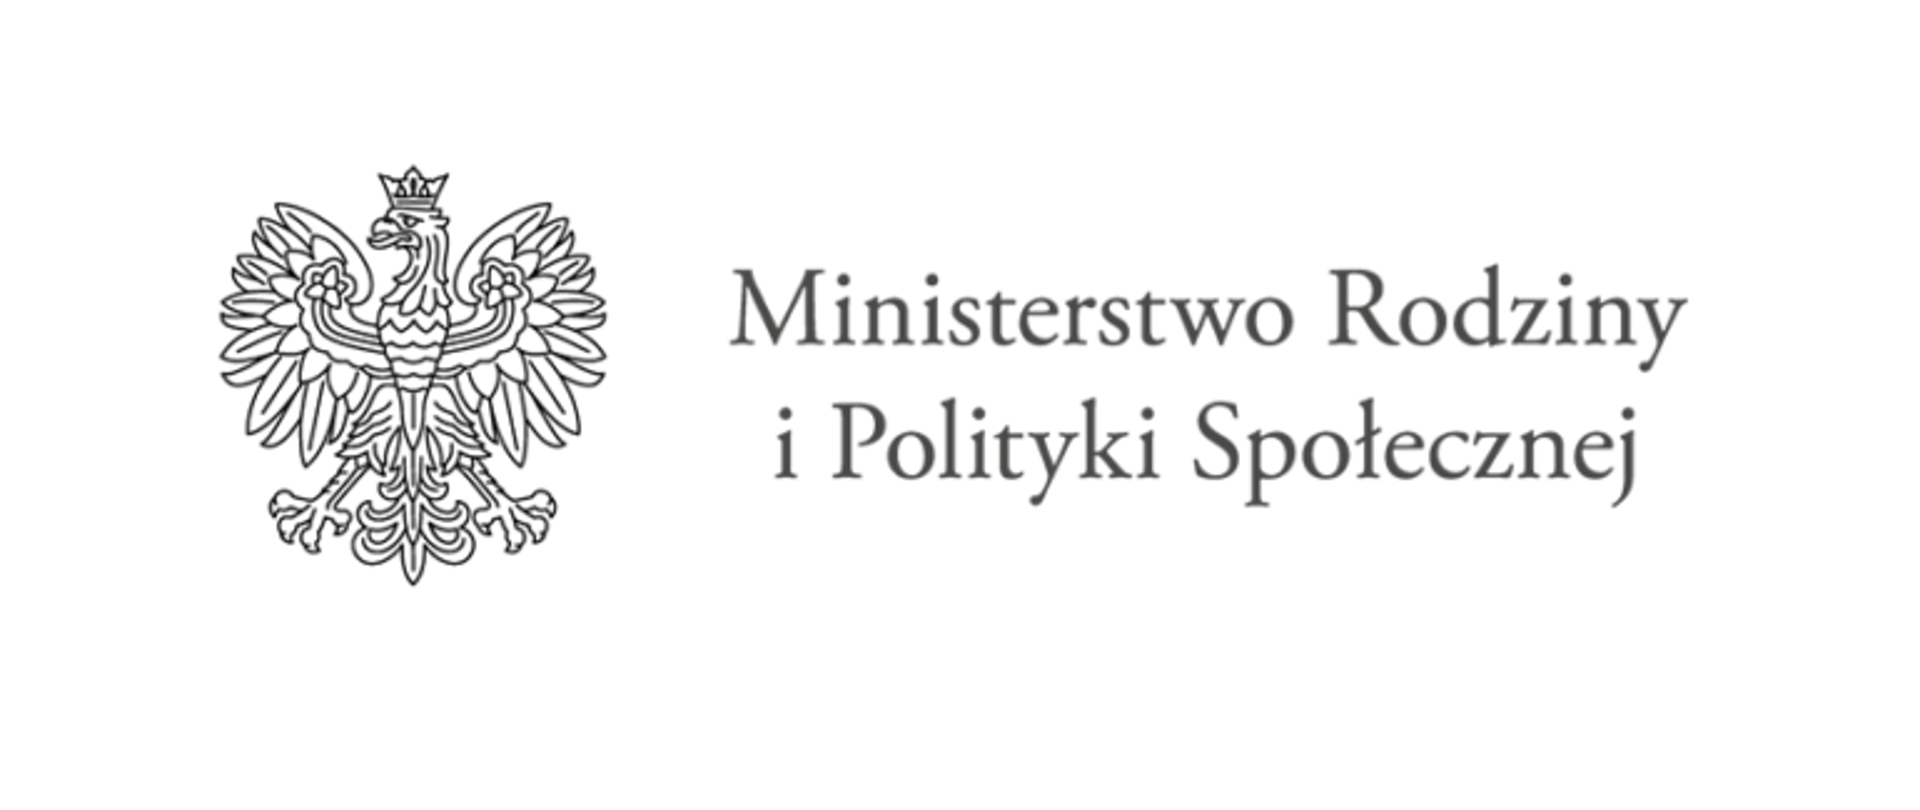 Ministerstwo Rodziny i Polityki Społecznej